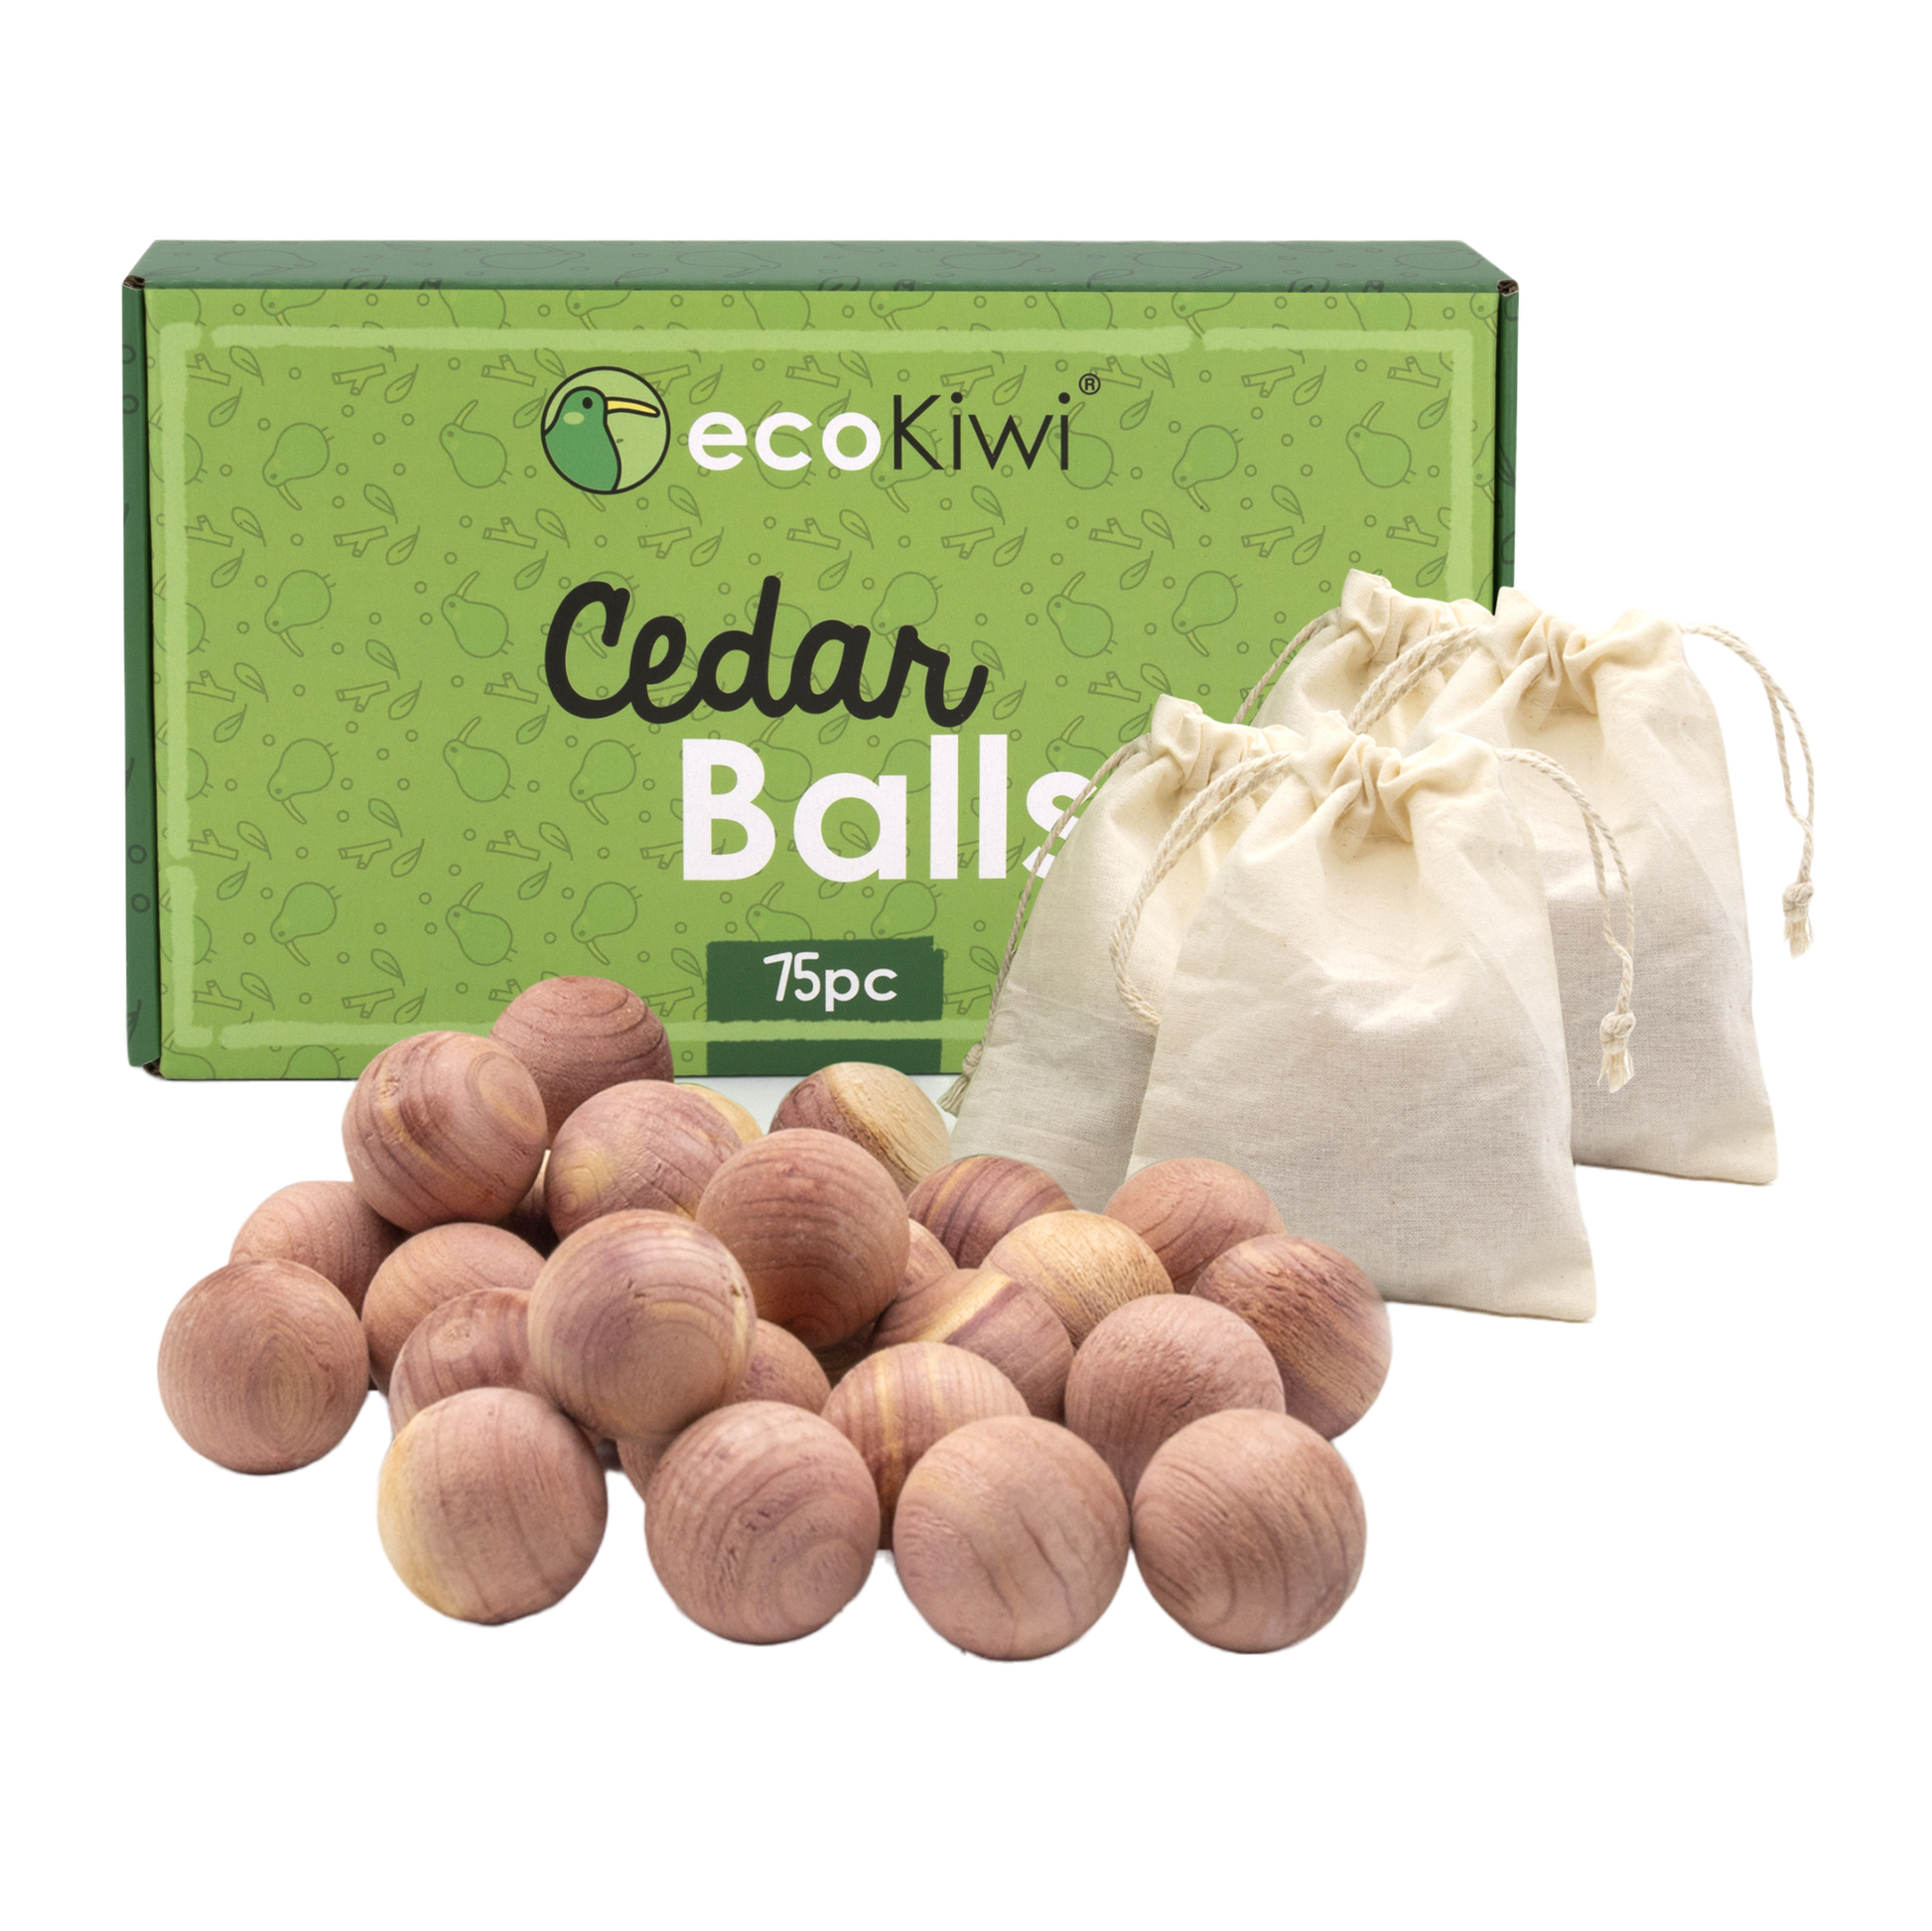 Wahdawn Cedar Balls for Moths